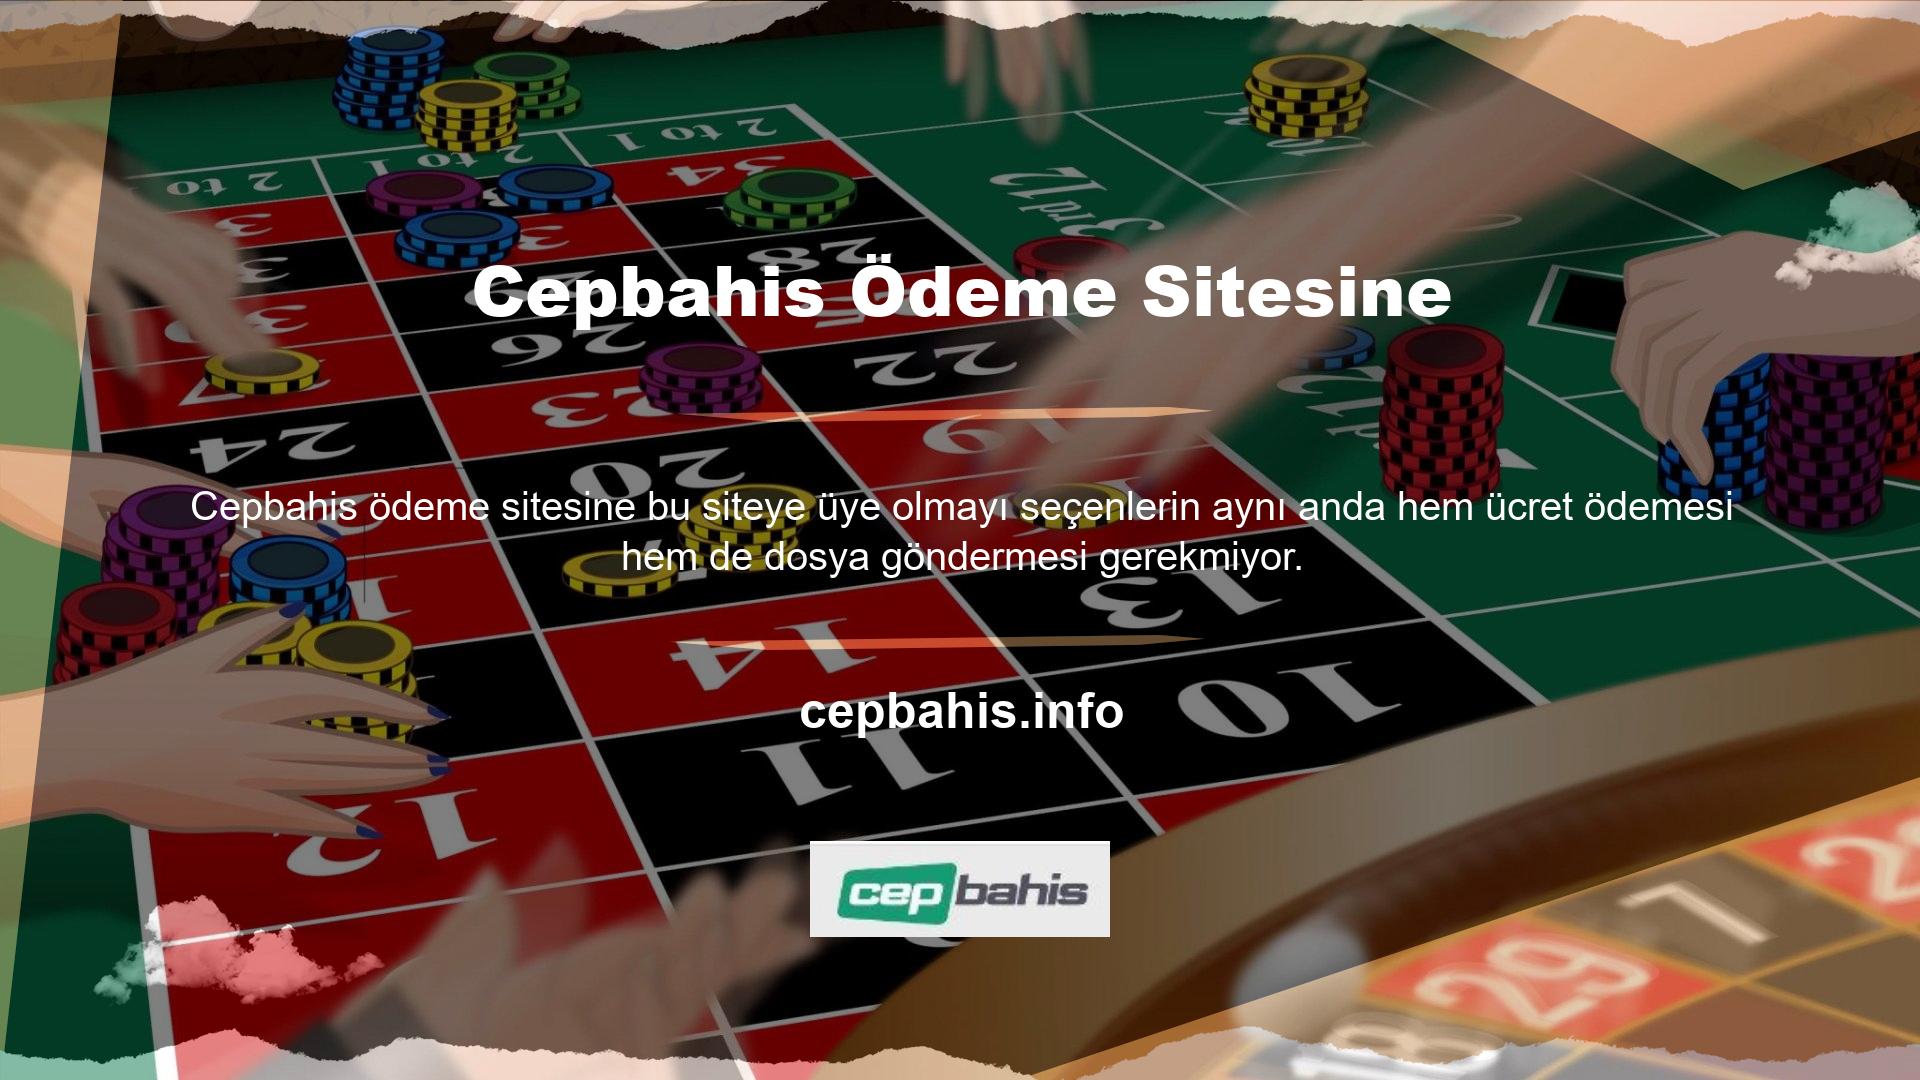 Cepbahis web sitesi yalnızca kullanıcıların oyunu oynamasını gerektiriyor, dolayısıyla kullanıcıların site için herhangi bir ek ücret ödemesine gerek kalmıyor